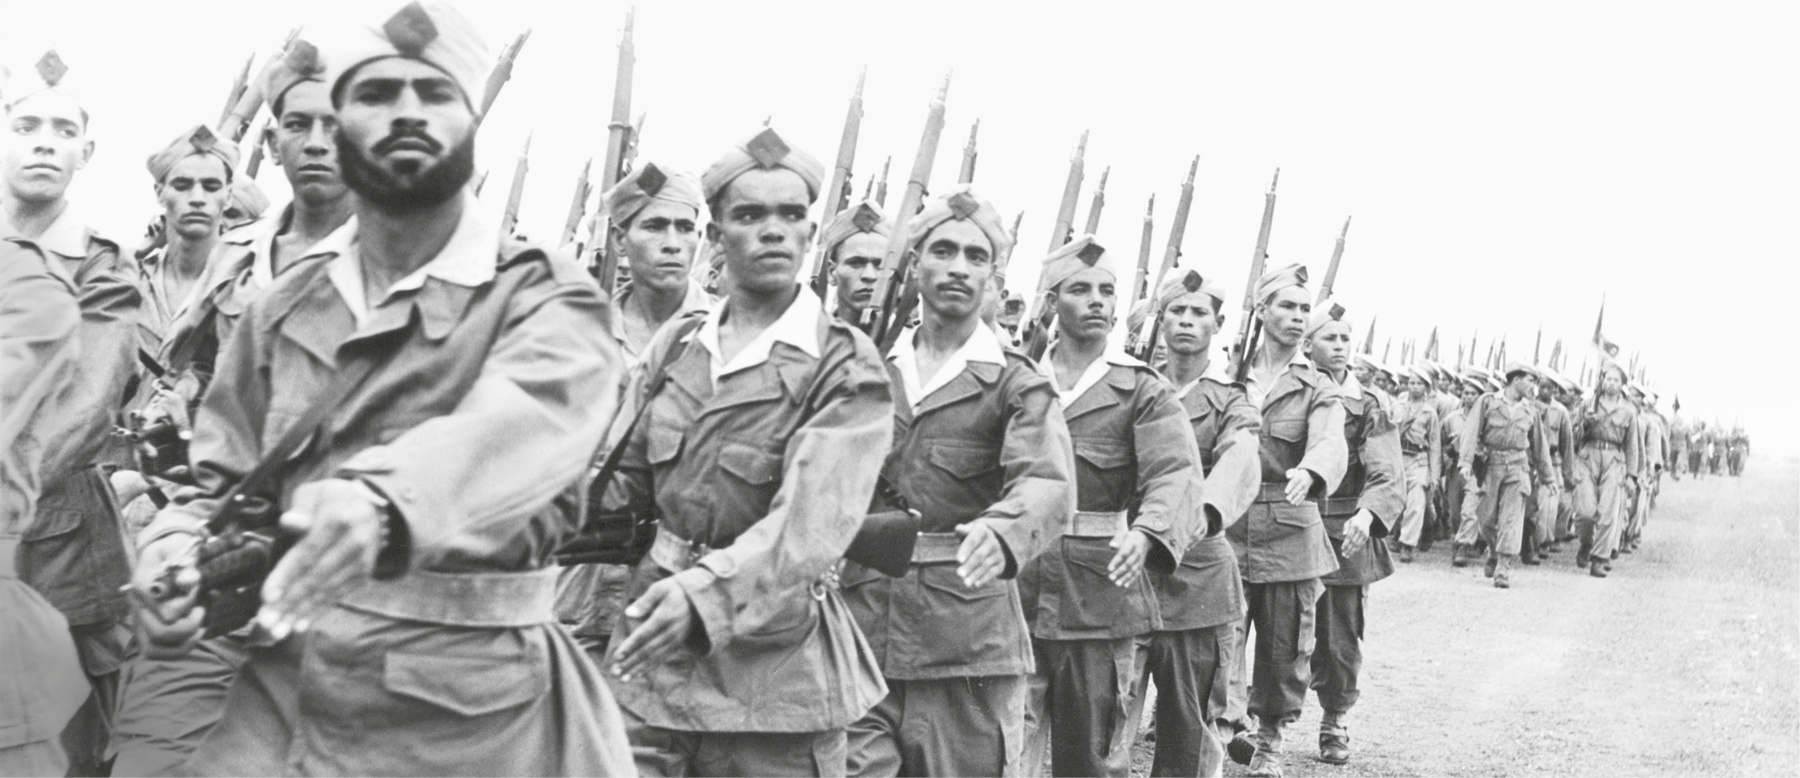 Fotografia em preto e branco. Soldados perfilados em uma longa fila. Estão com os braços em movimento e carregam baionetas sobre os ombros.